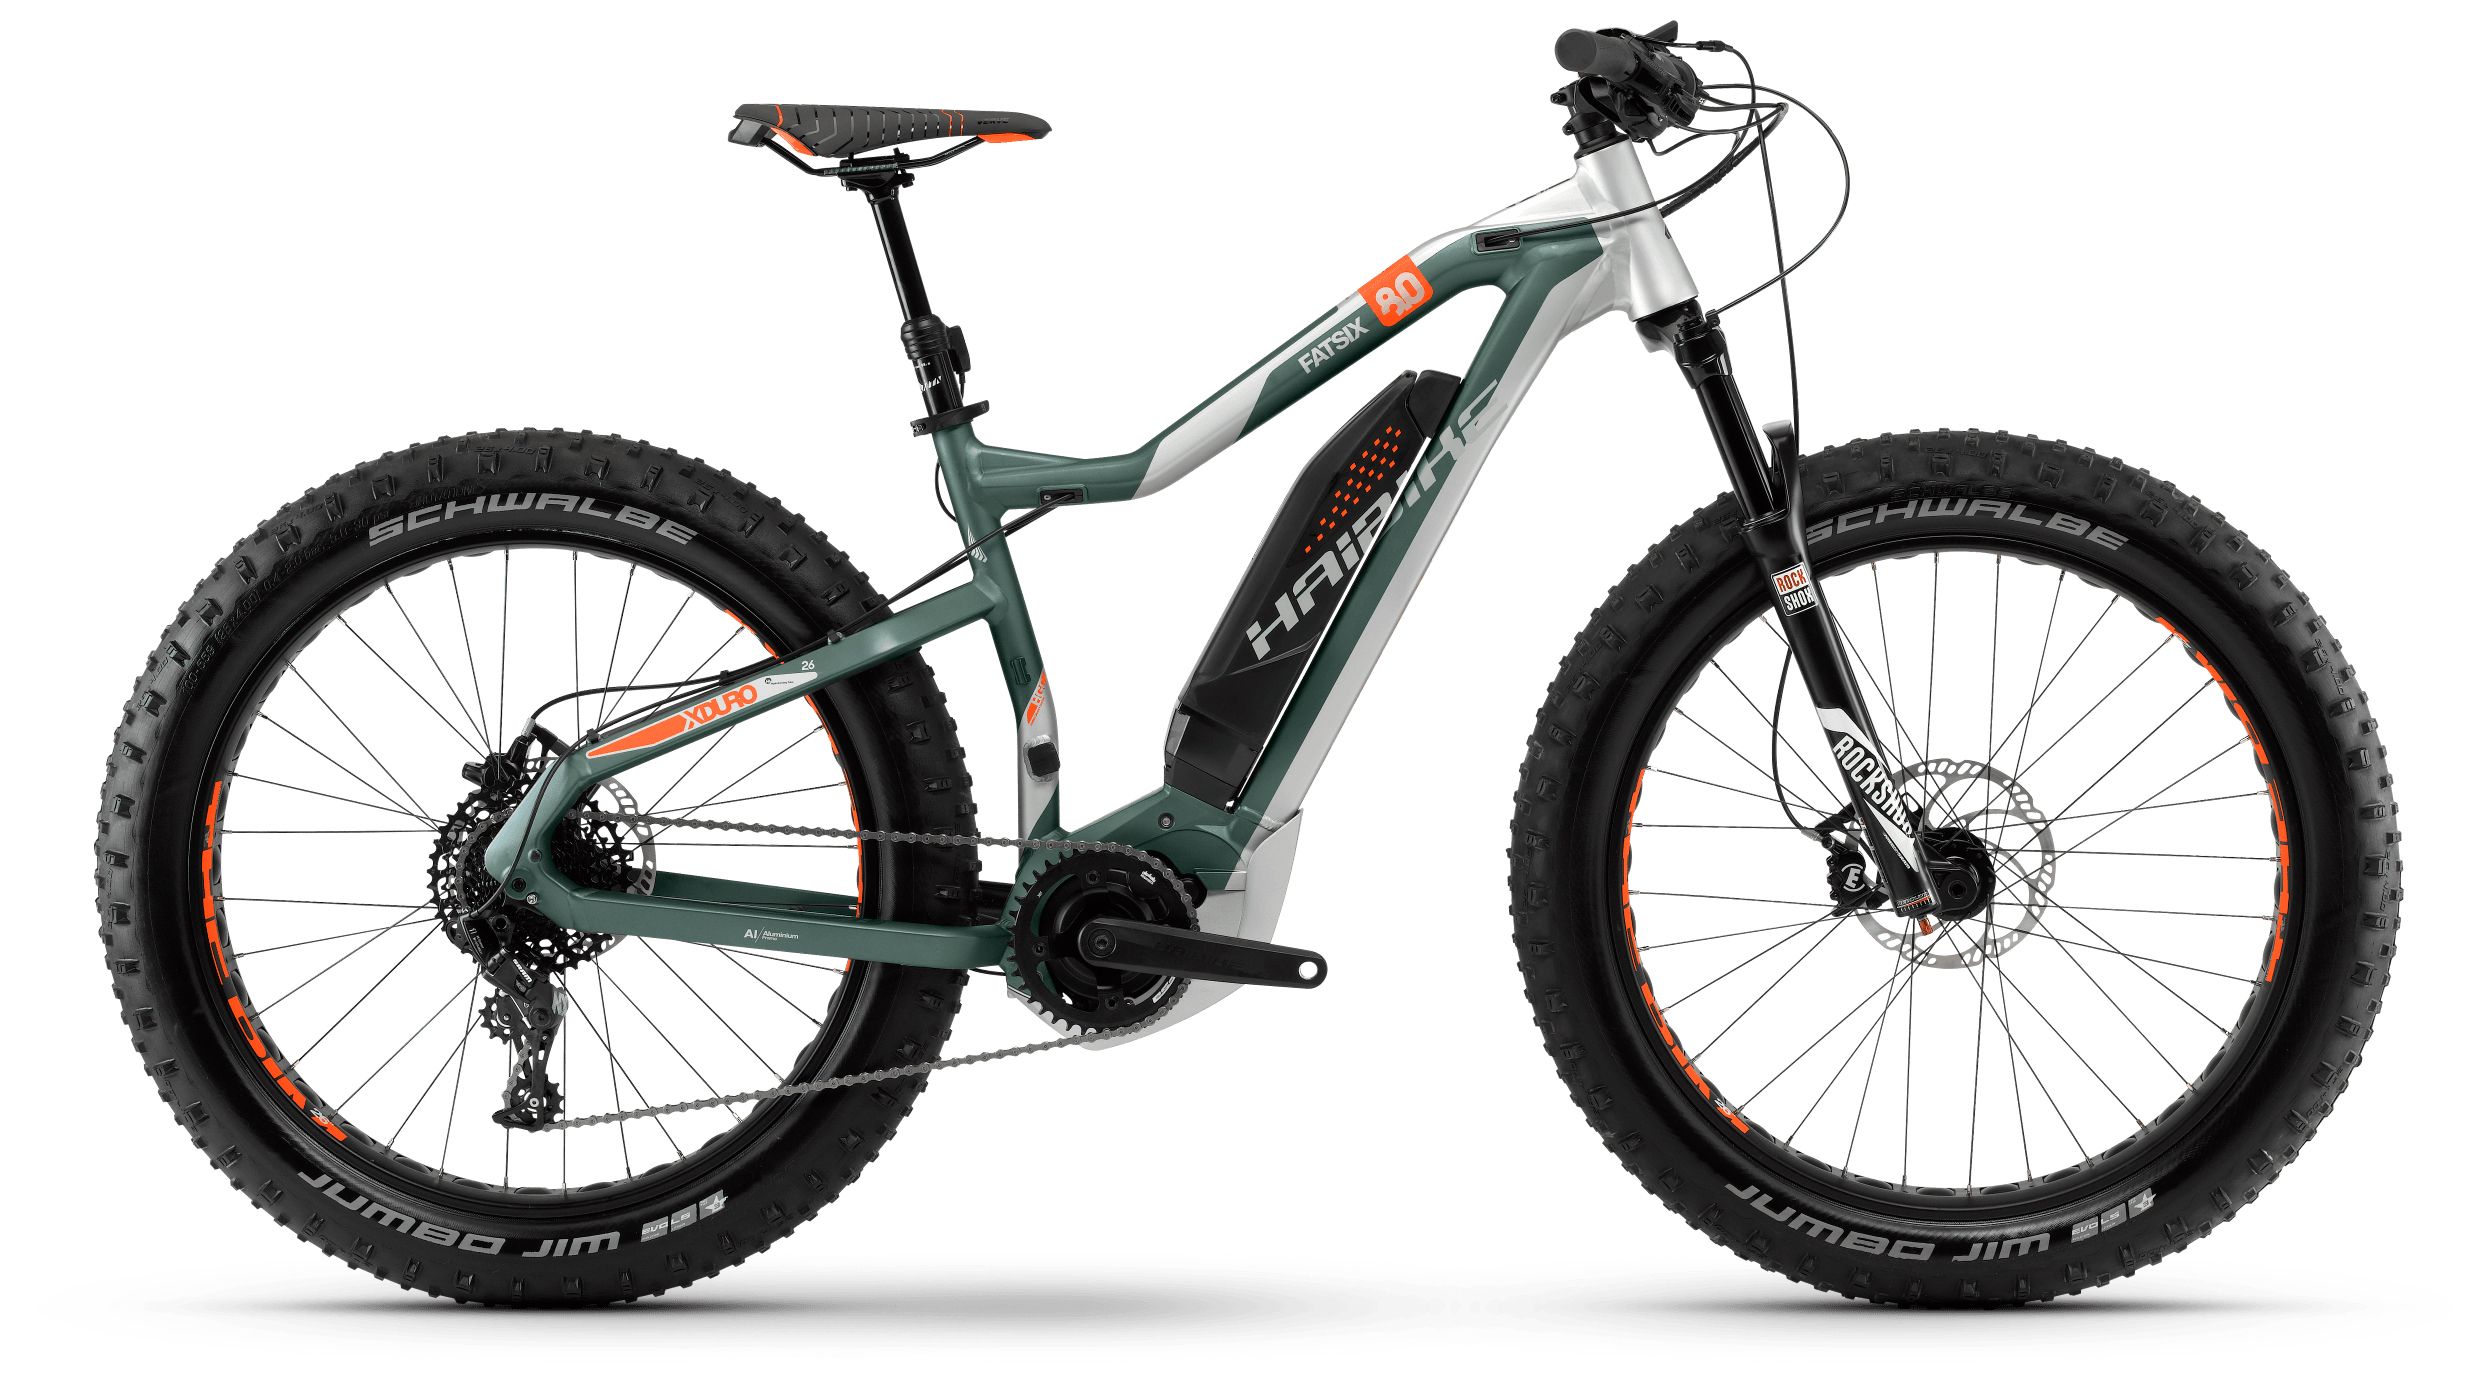  Отзывы о Горном велосипеде Haibike Xduro FatSix 8.0 500Wh 11s NX 2018